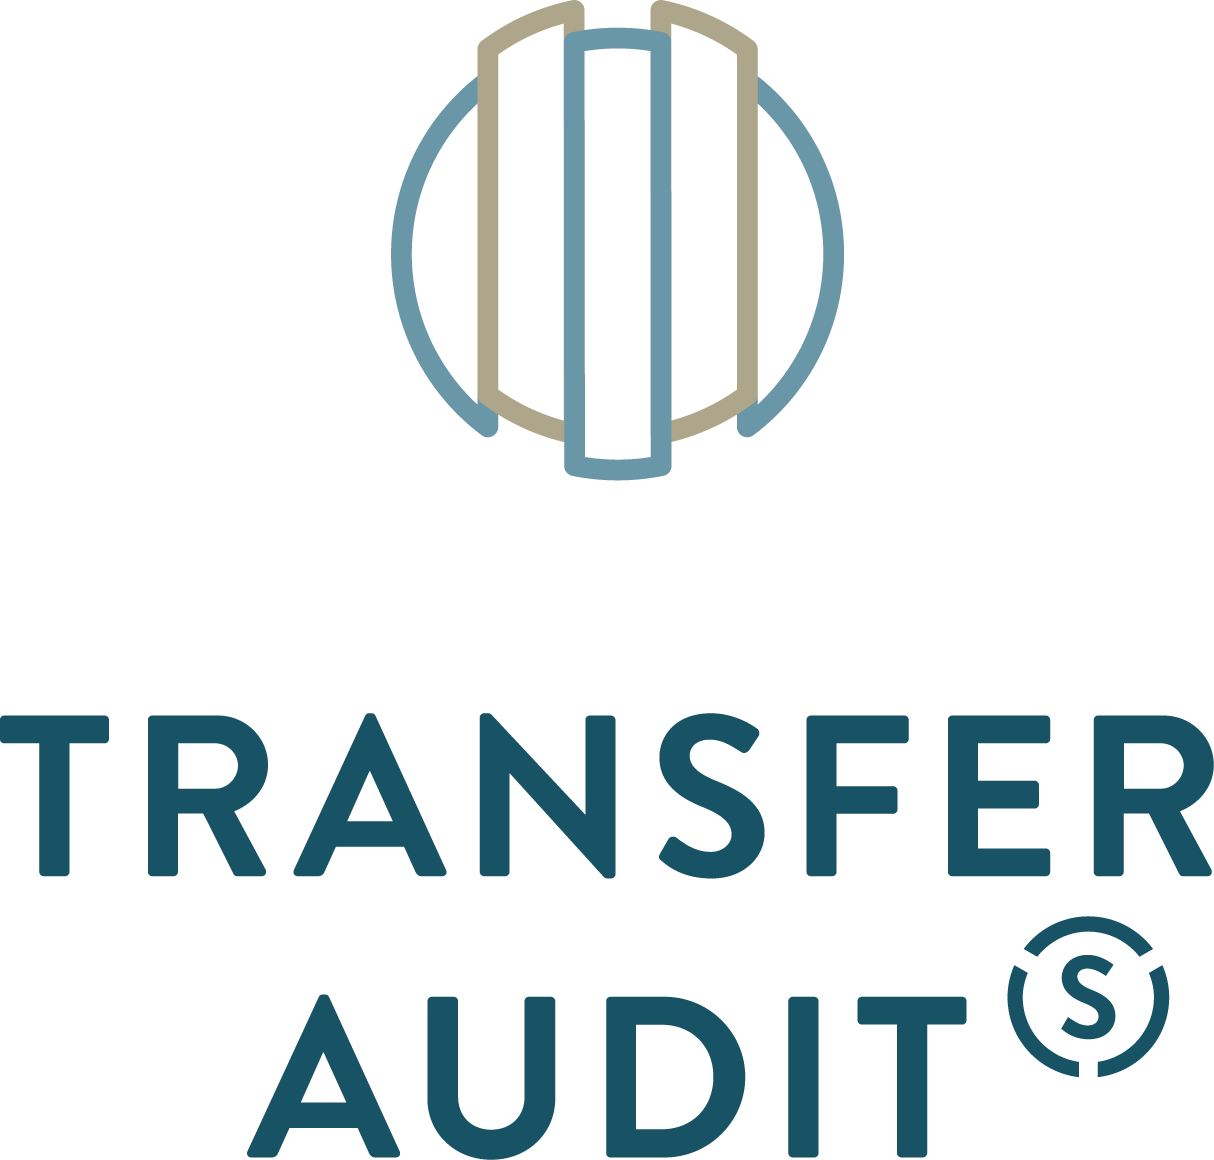 Transit Audit